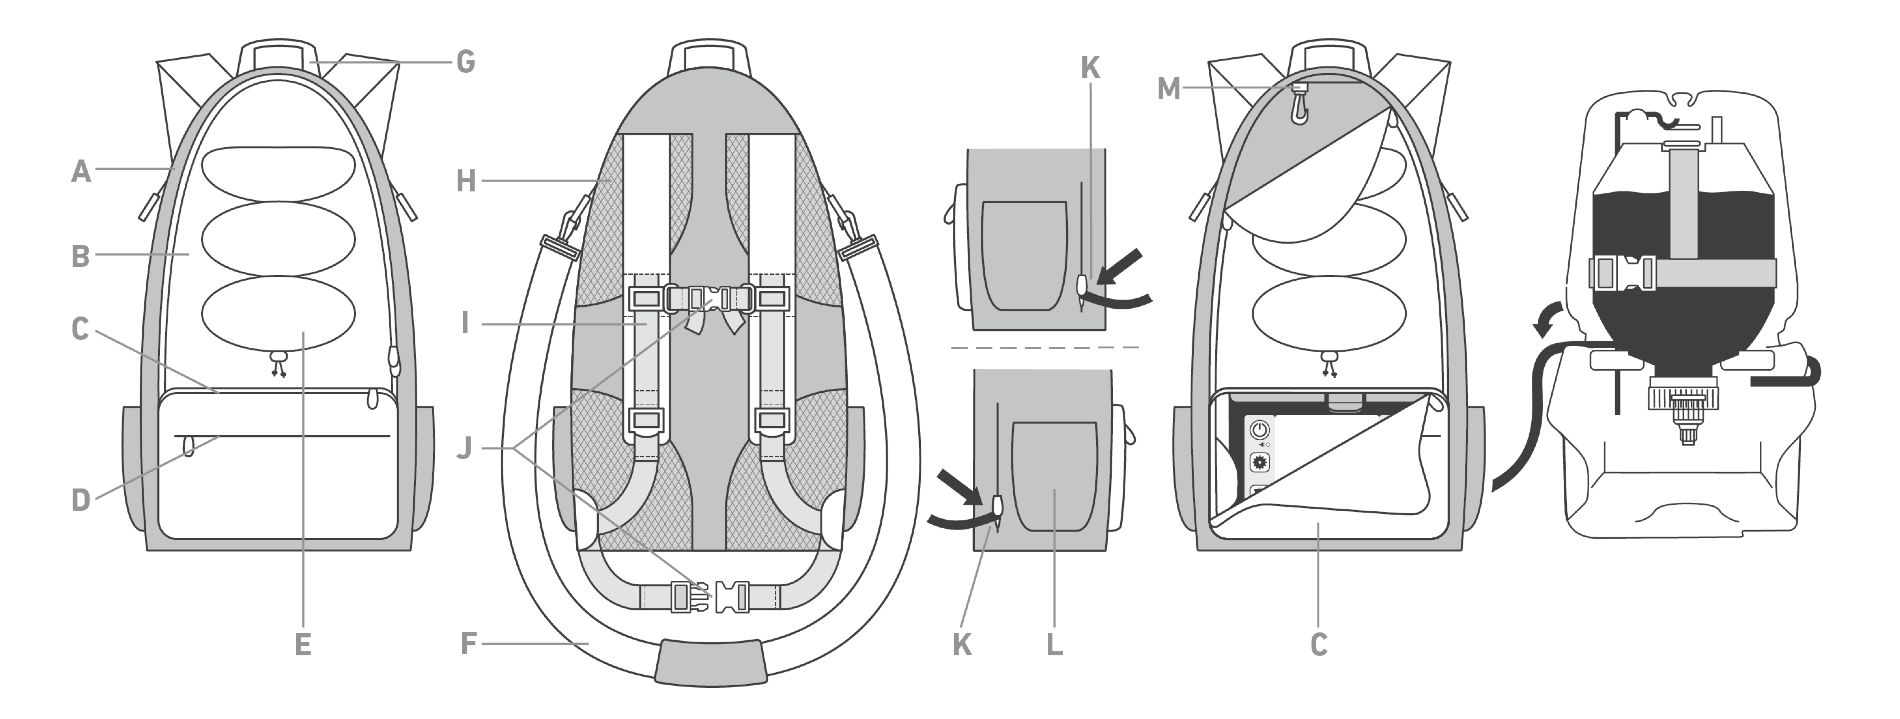 Illustrative Darstellung Rücksack für flüssige Ernährung